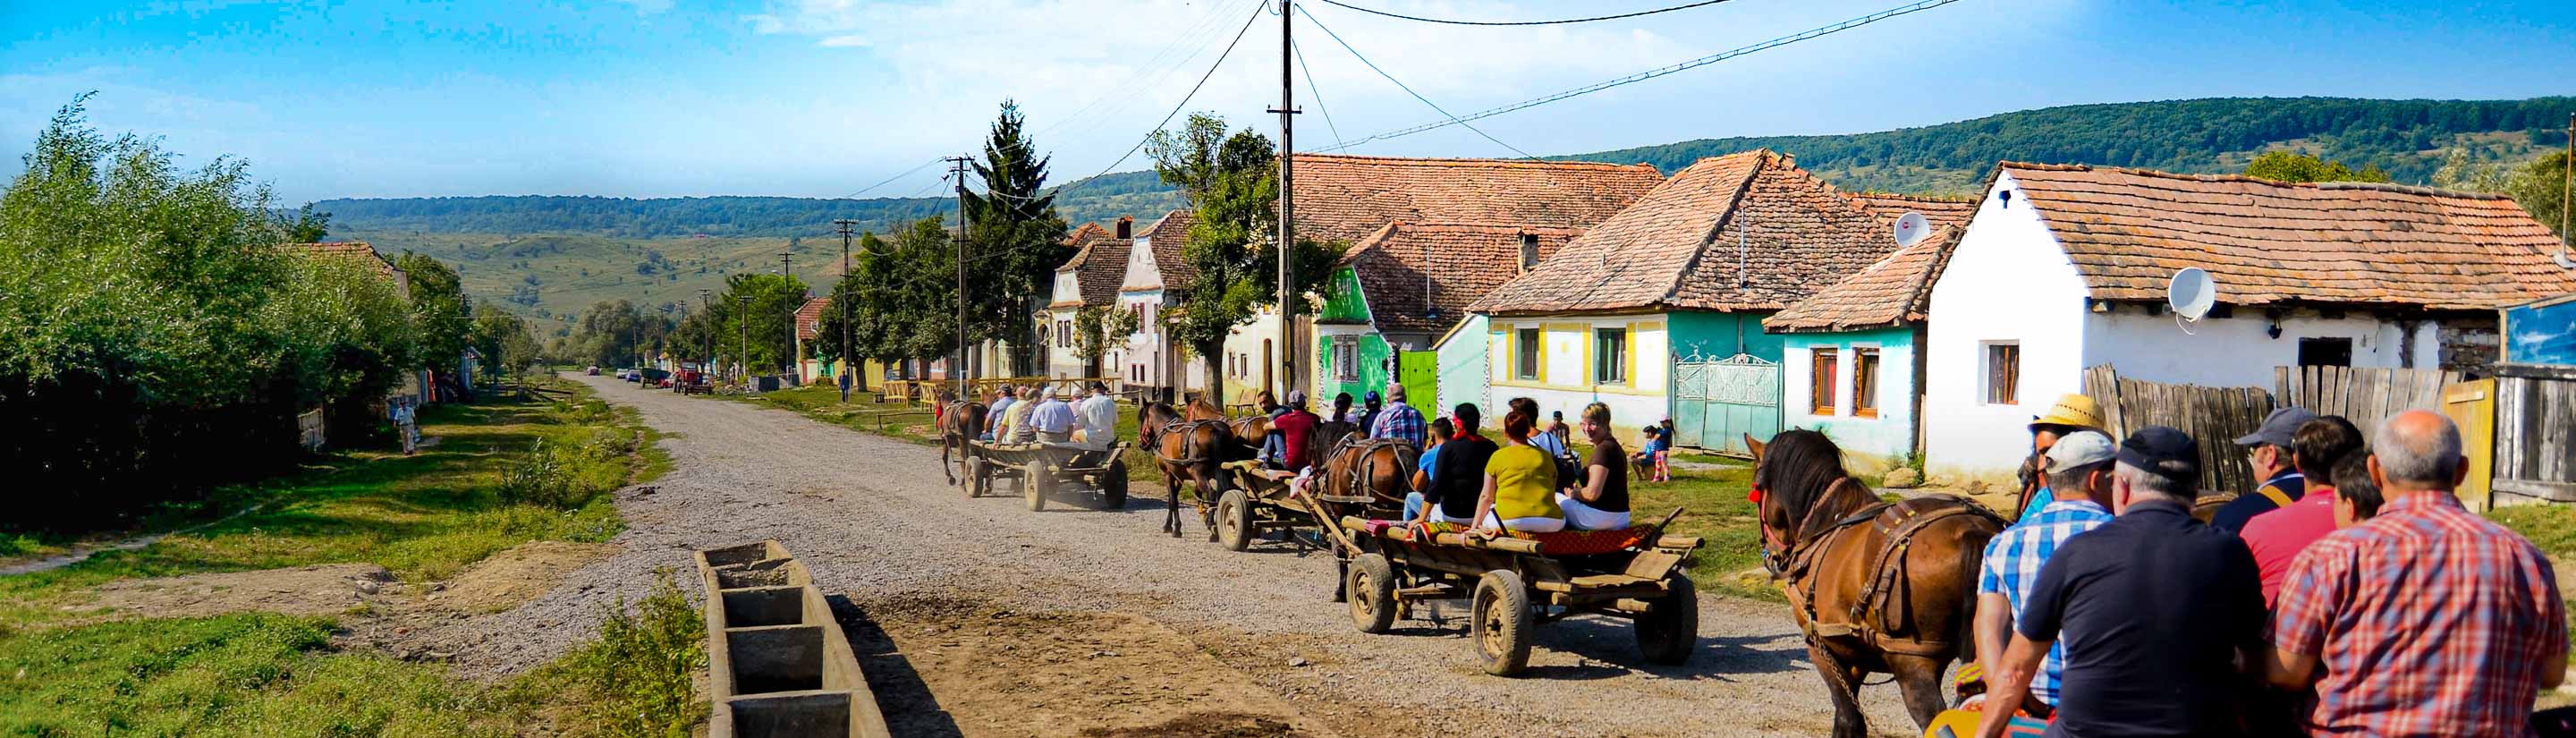 Rumänien-Reise: Ein unentdecktes Land